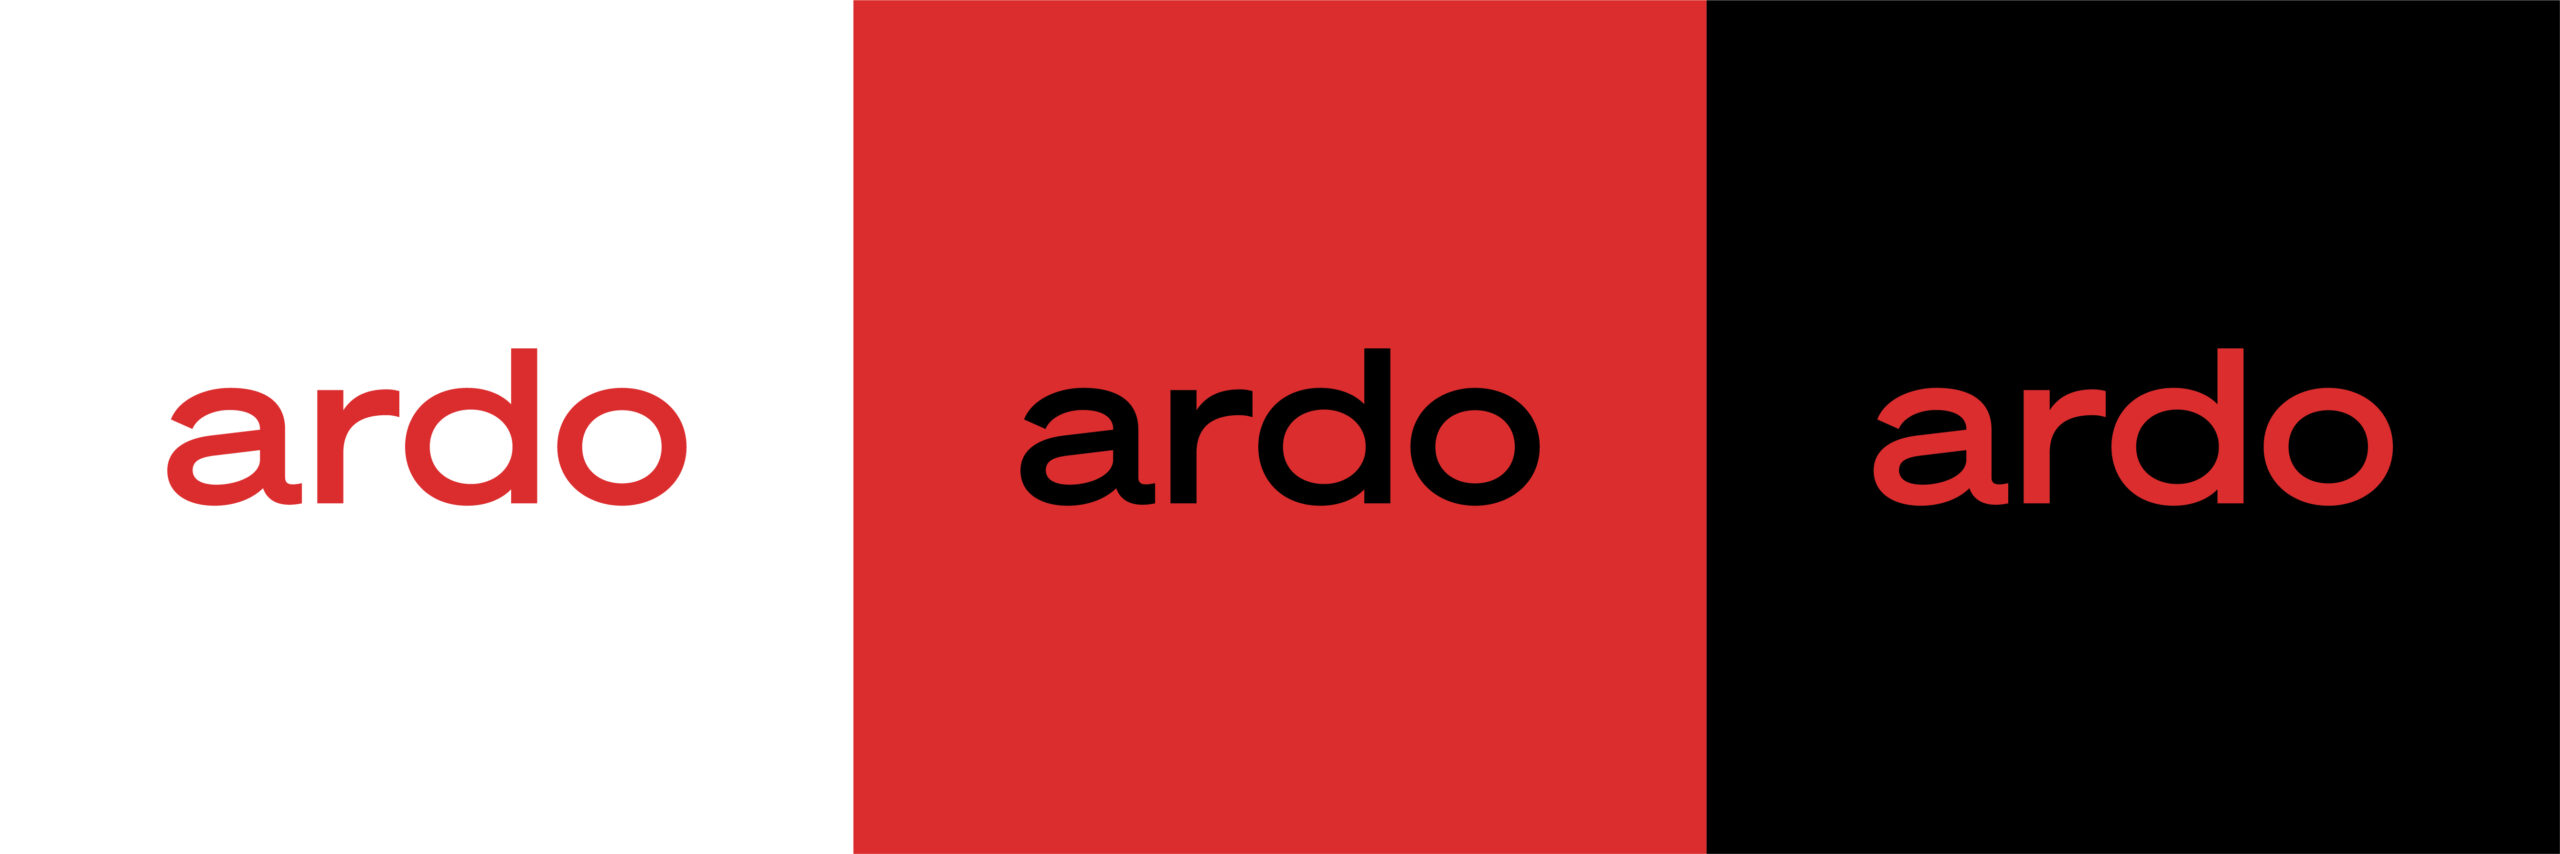 ardo_oldlogos-22